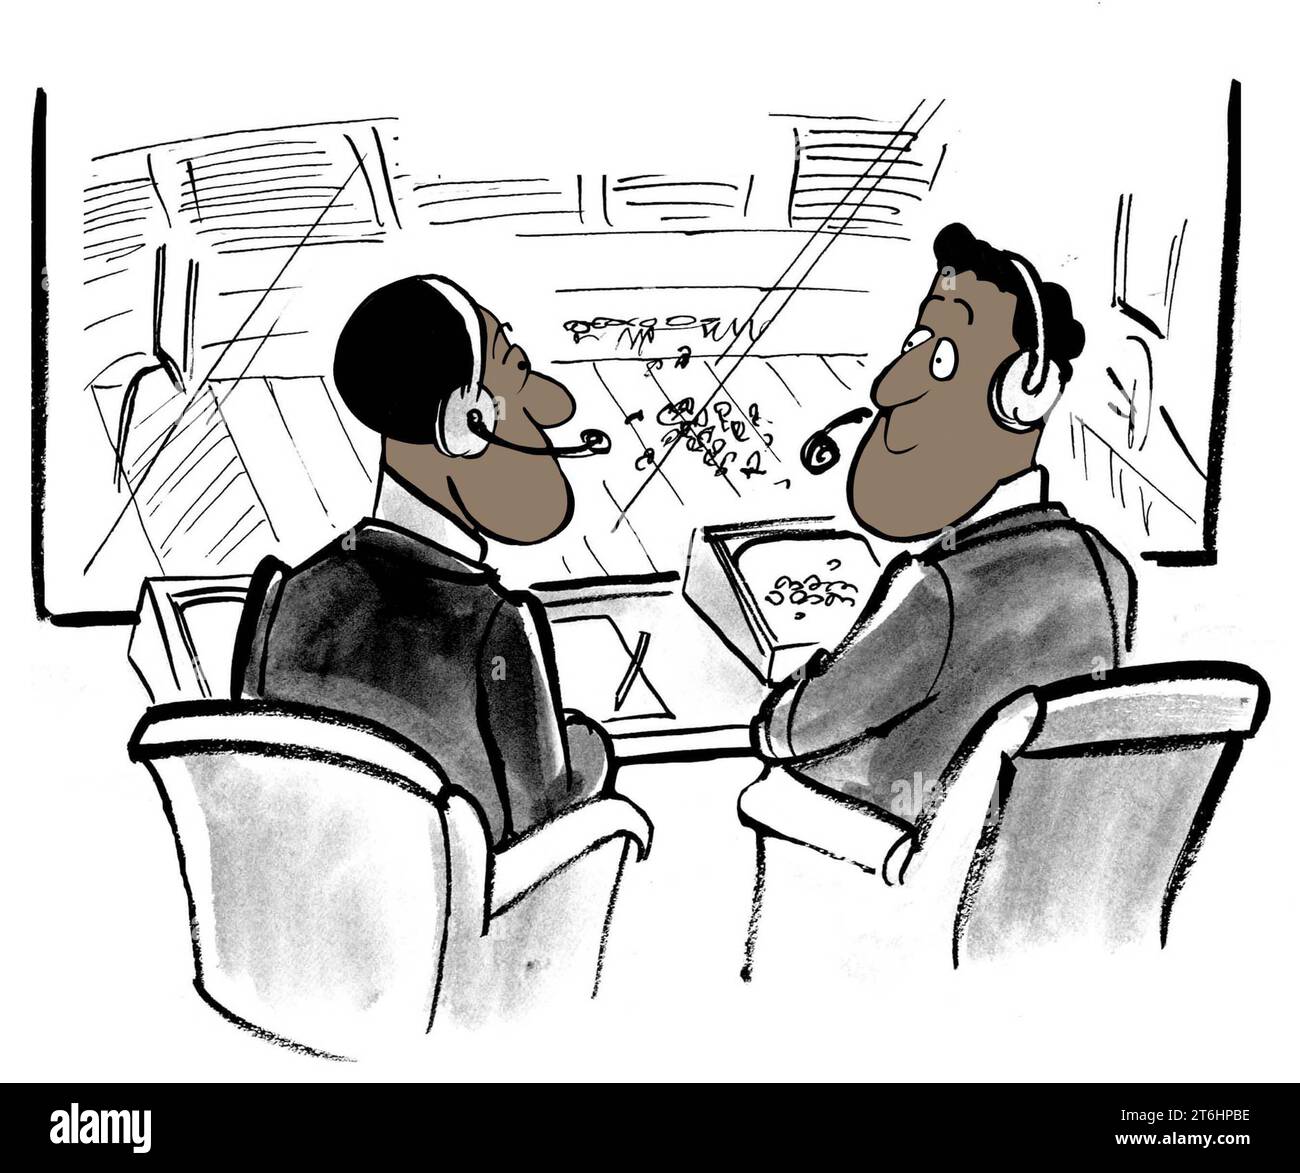 Illustrazione a colori di due profesisonali cronisti sportivi neri che si guardano l'un l'altro come chiamano una partita di calcio. Foto Stock